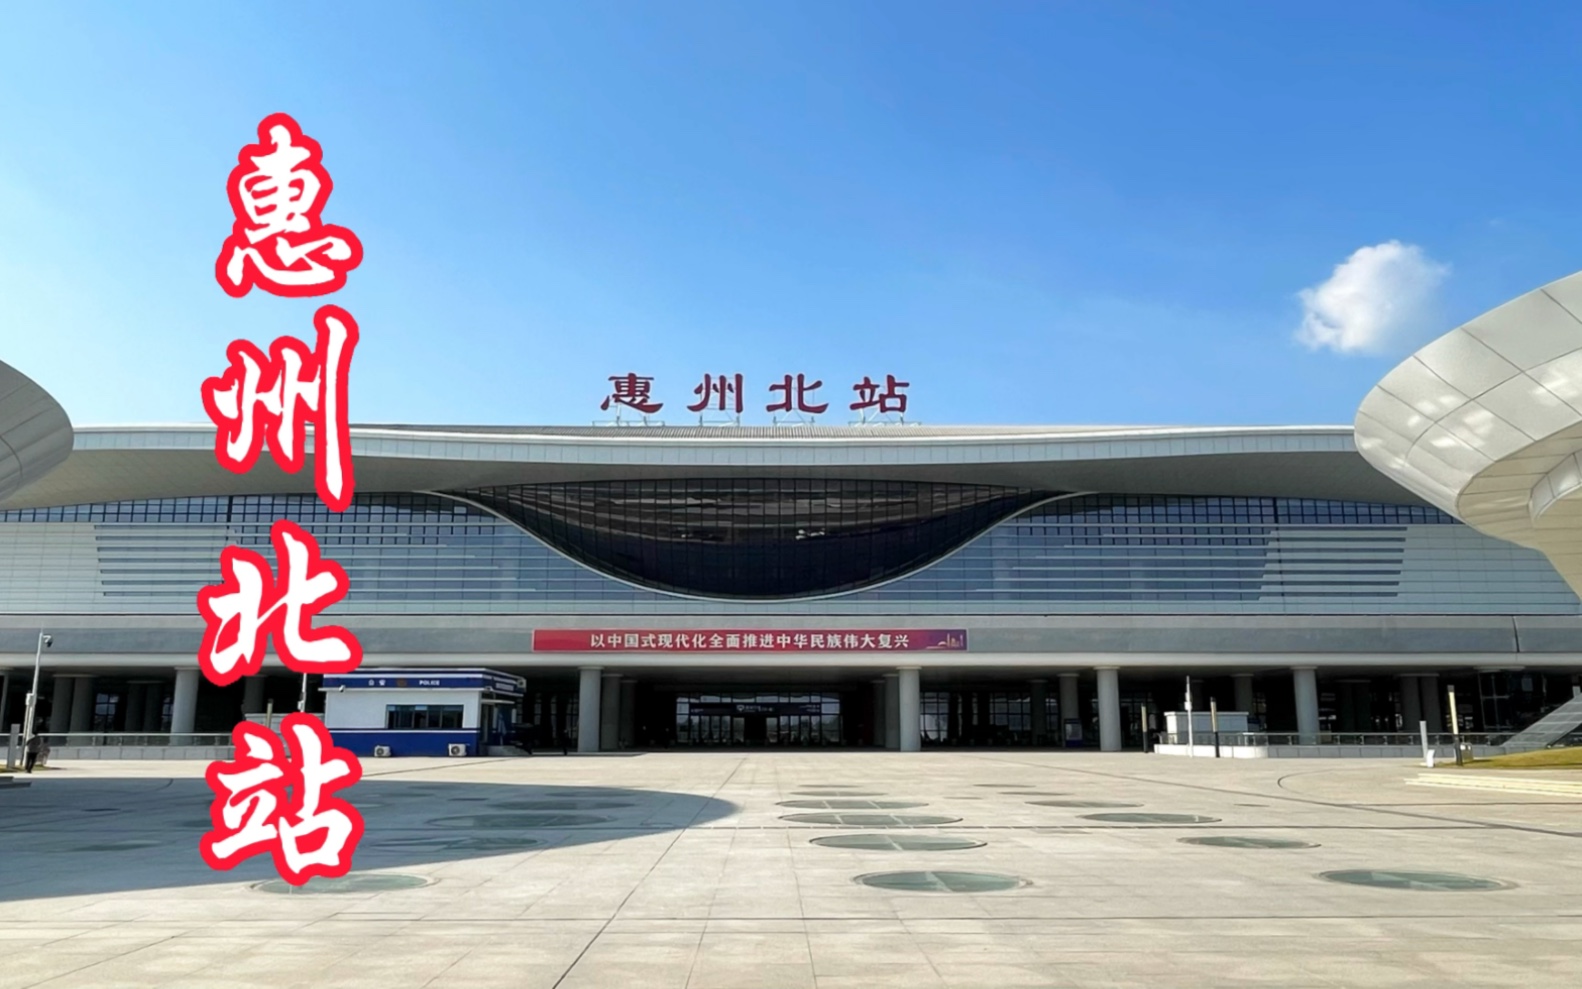 惠州北站是惠州境内最大的高铁站,站台规模7台16线